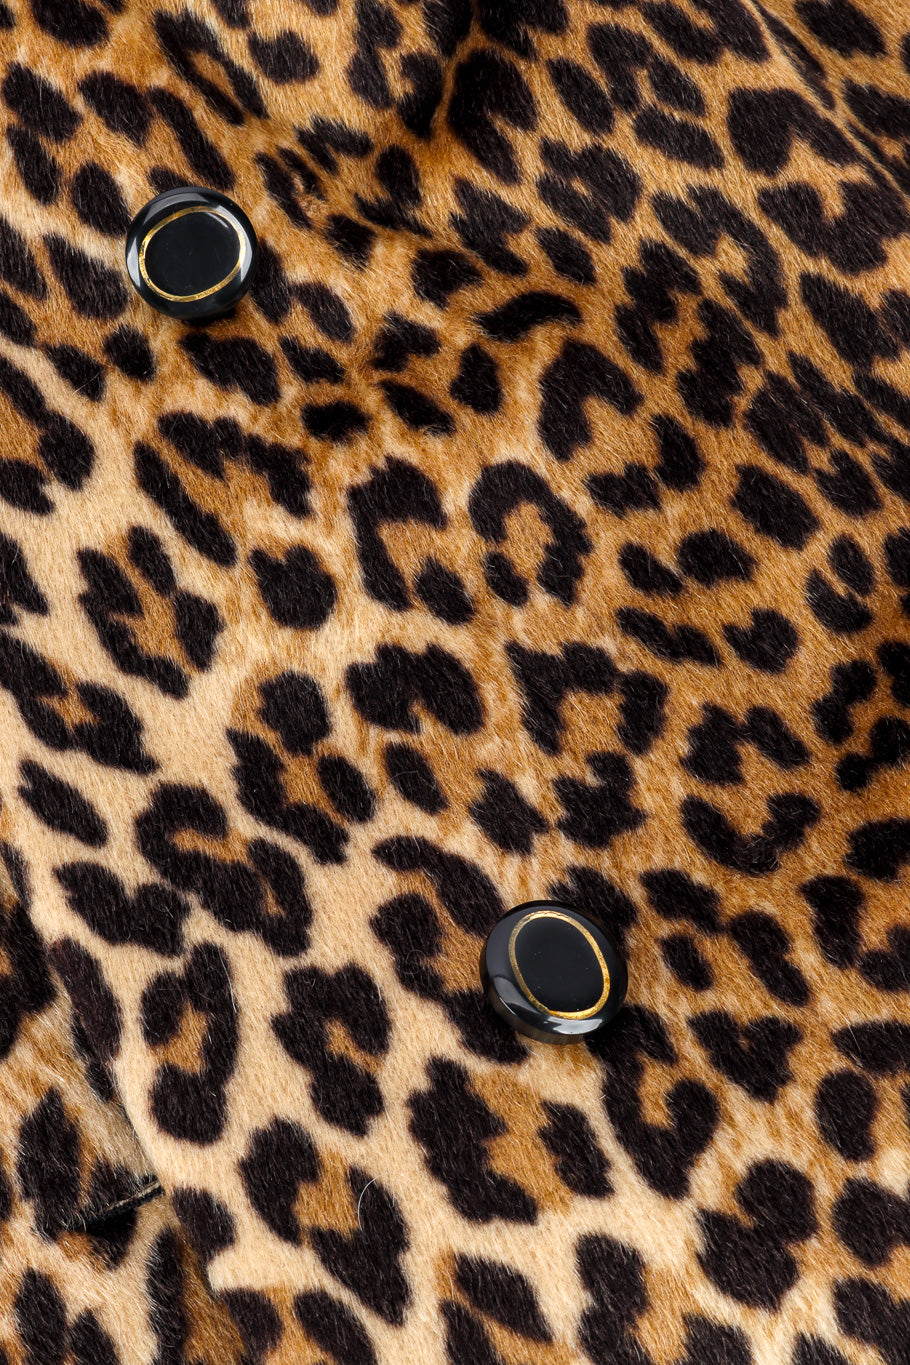 Vintage Versace 1992 S/S Silk Leopard Print Blazer